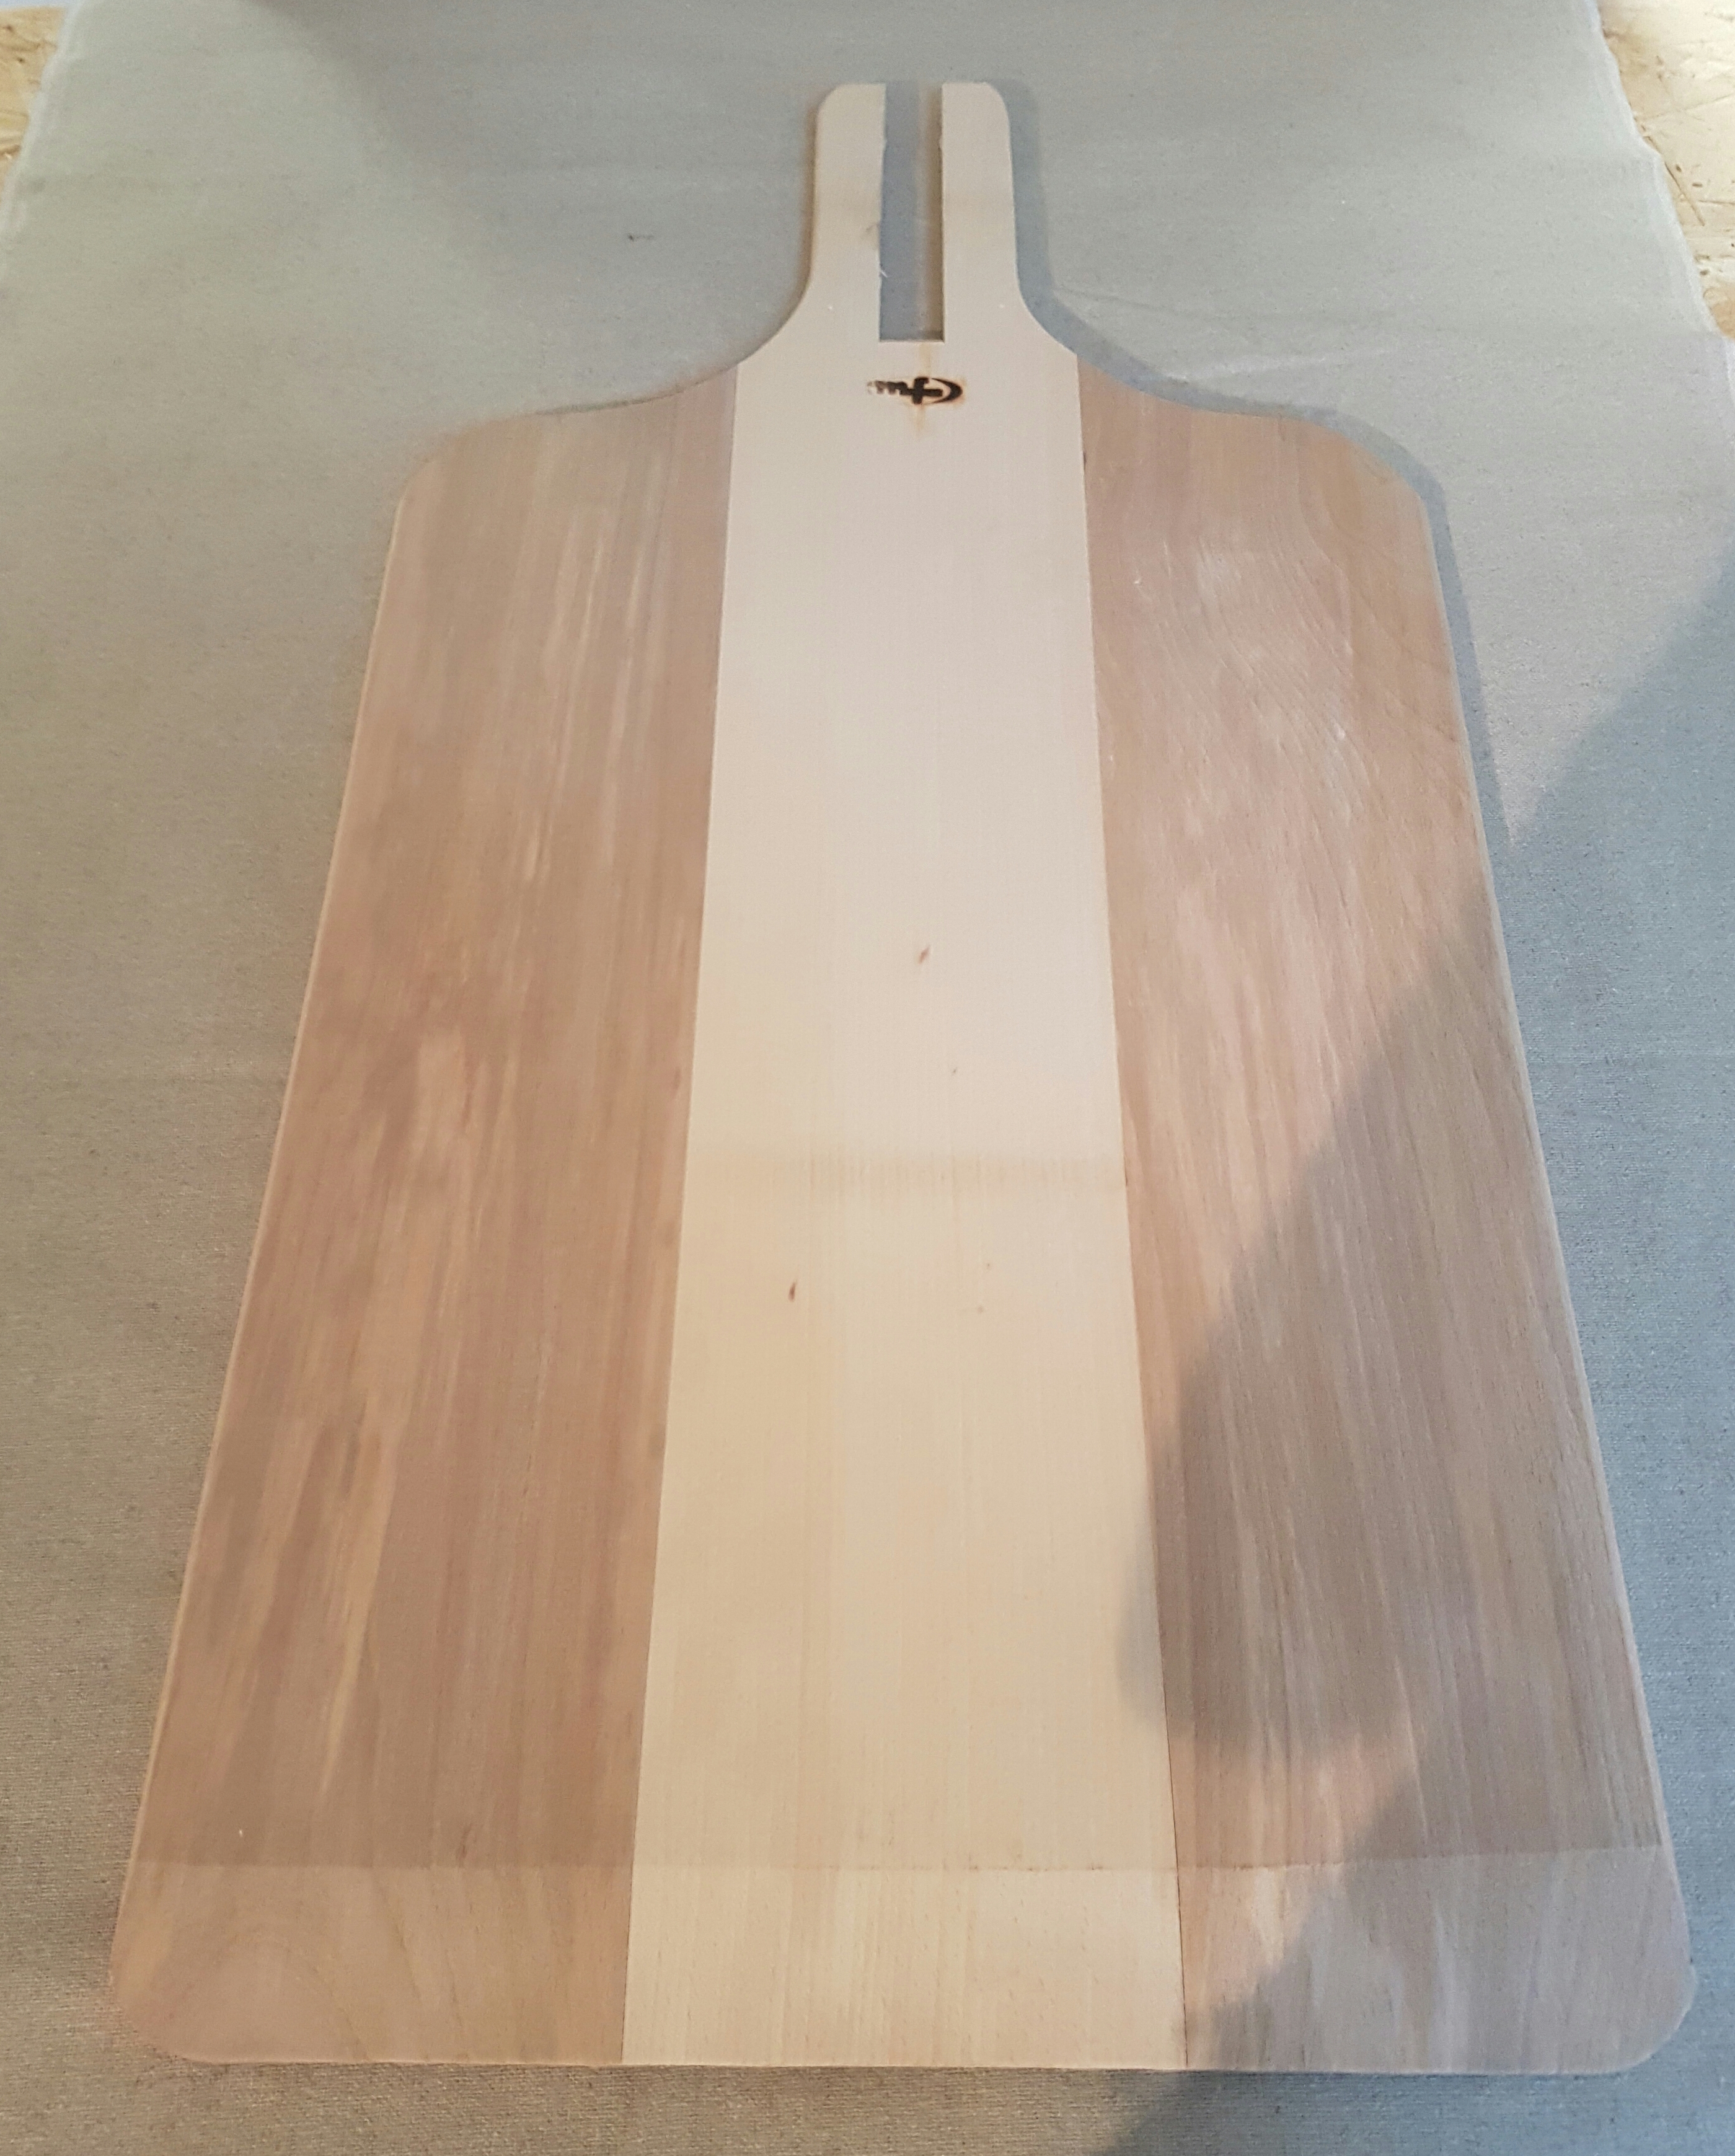 60cm x 40cm Wooden Oven Peel Head (No Handle)